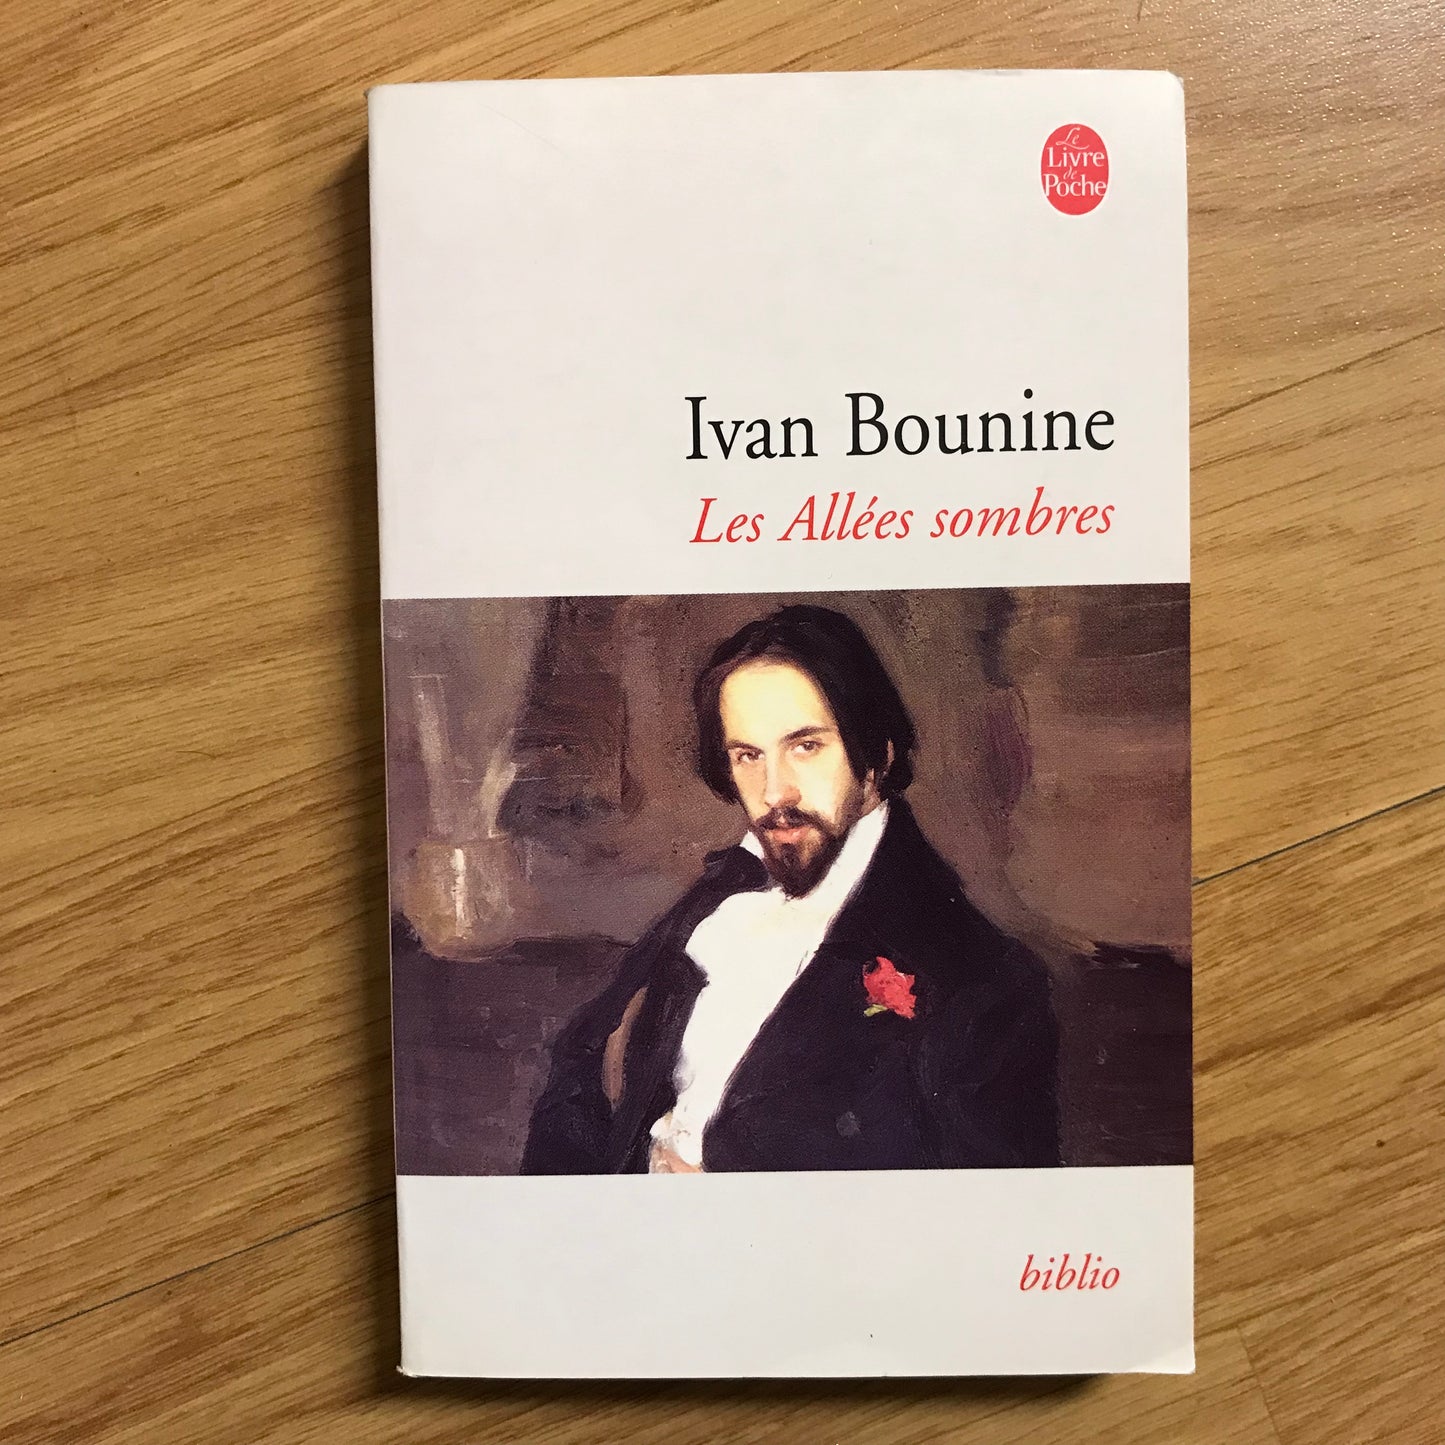 Bounine, Ivan - Les allées sombres